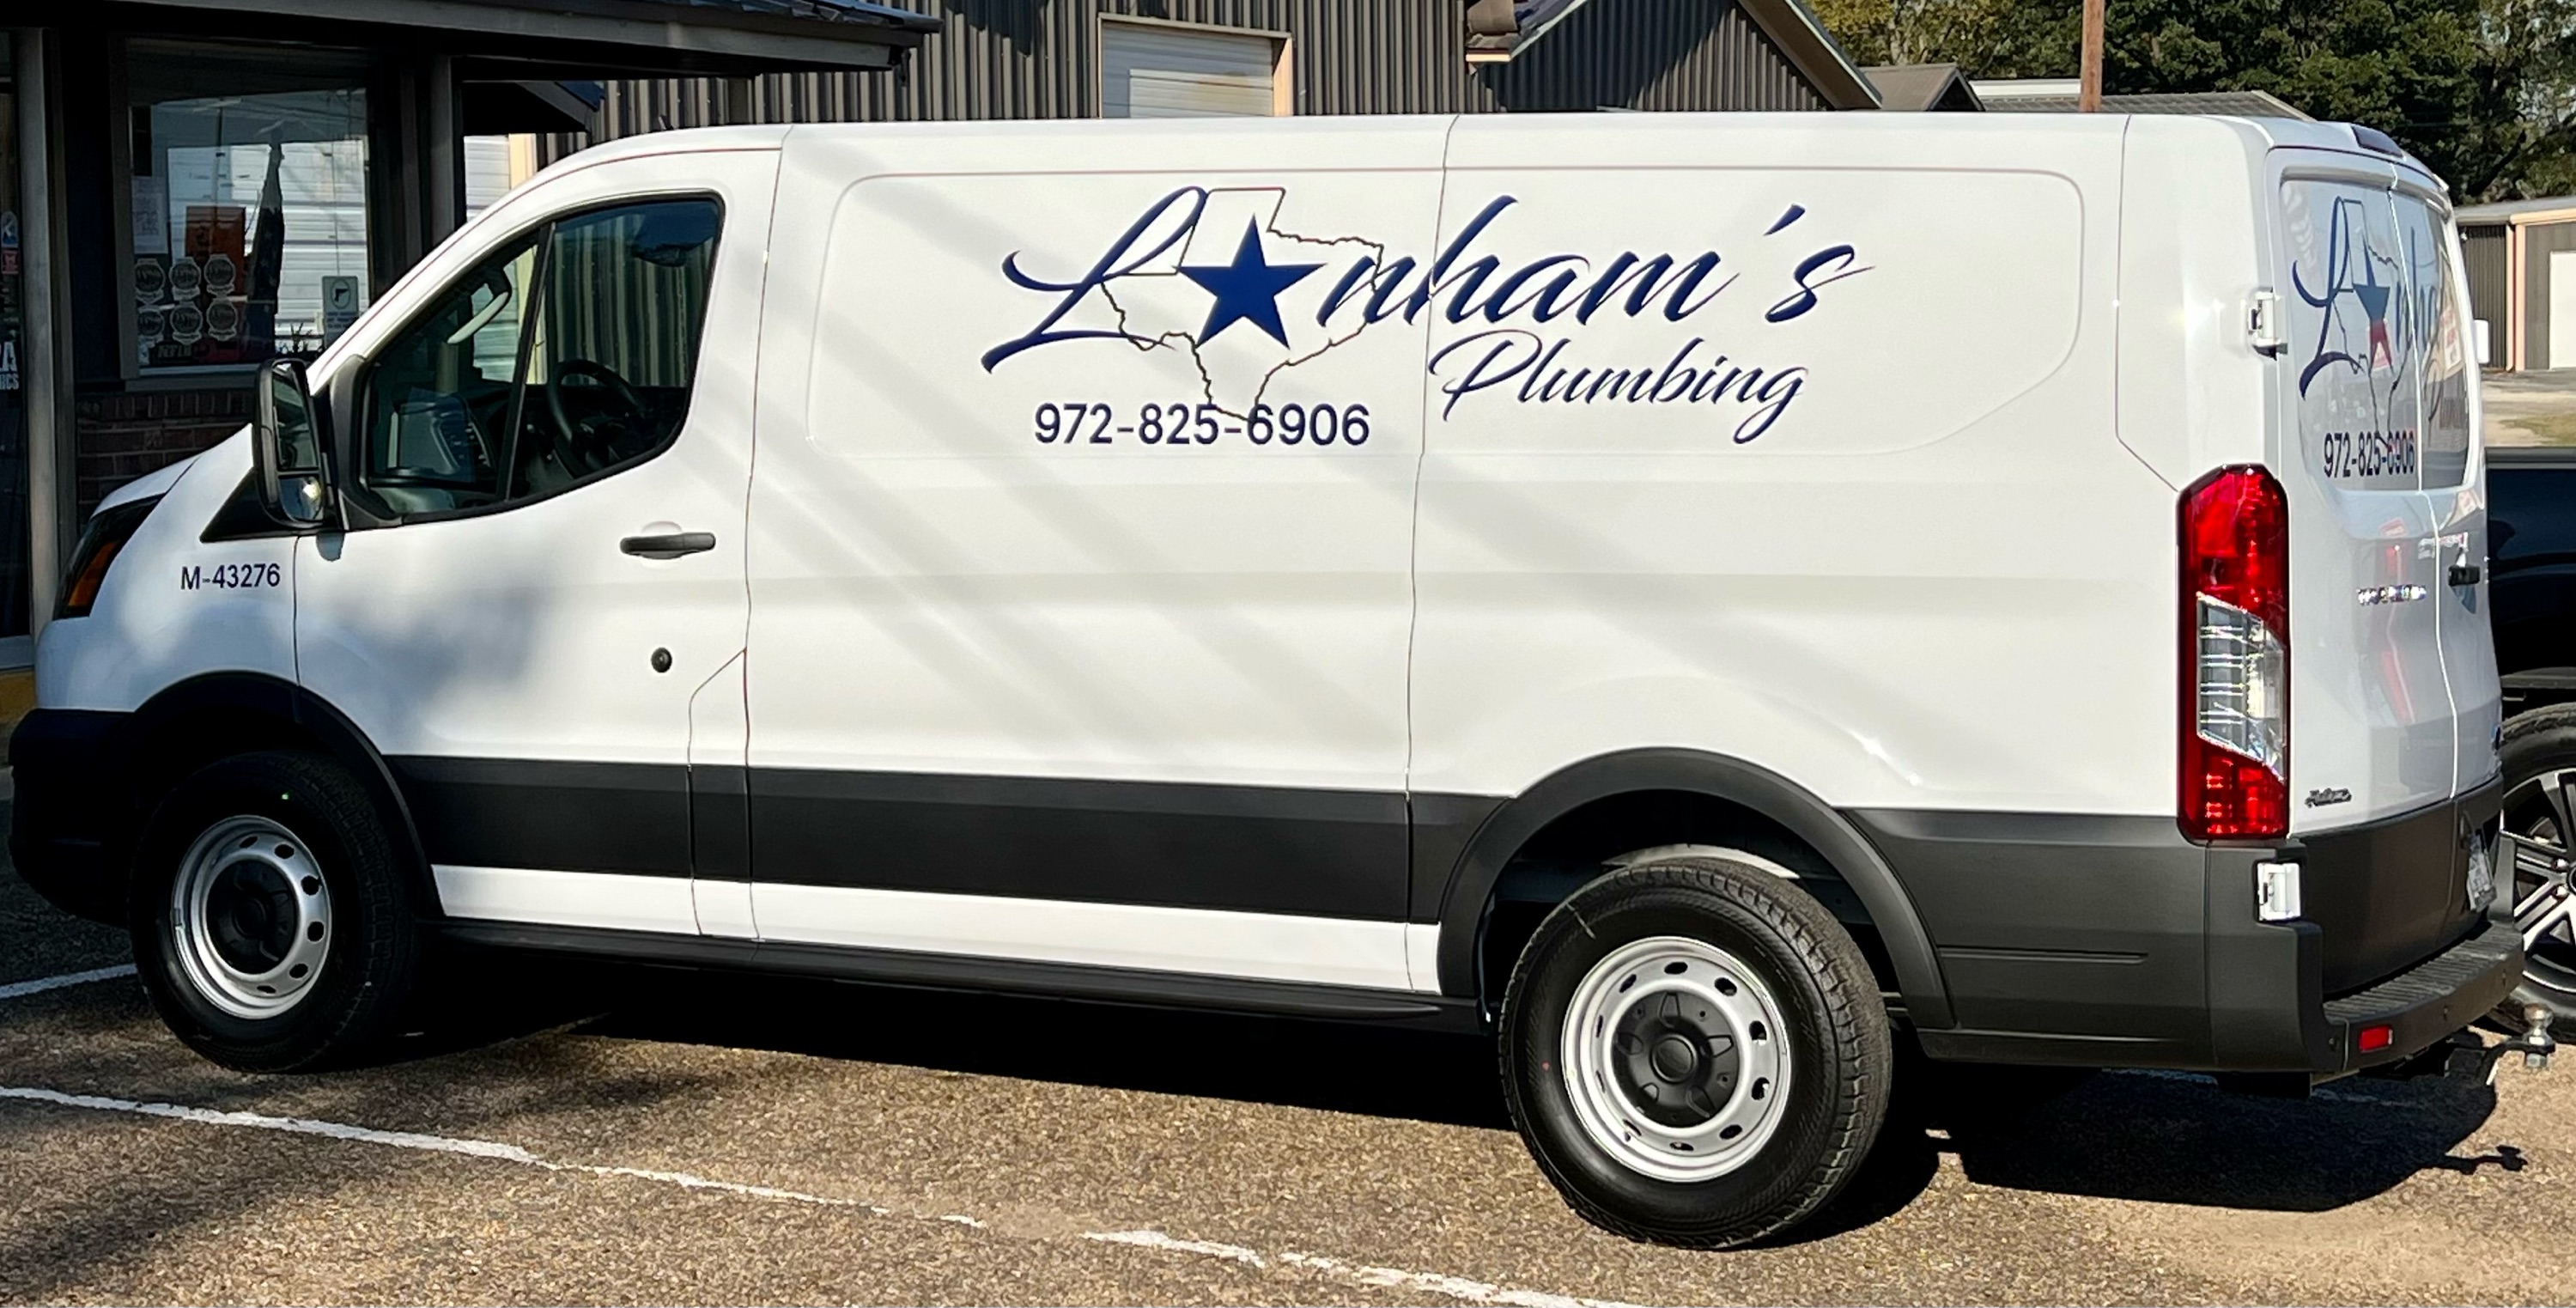 Lanhams Plumbing Logo